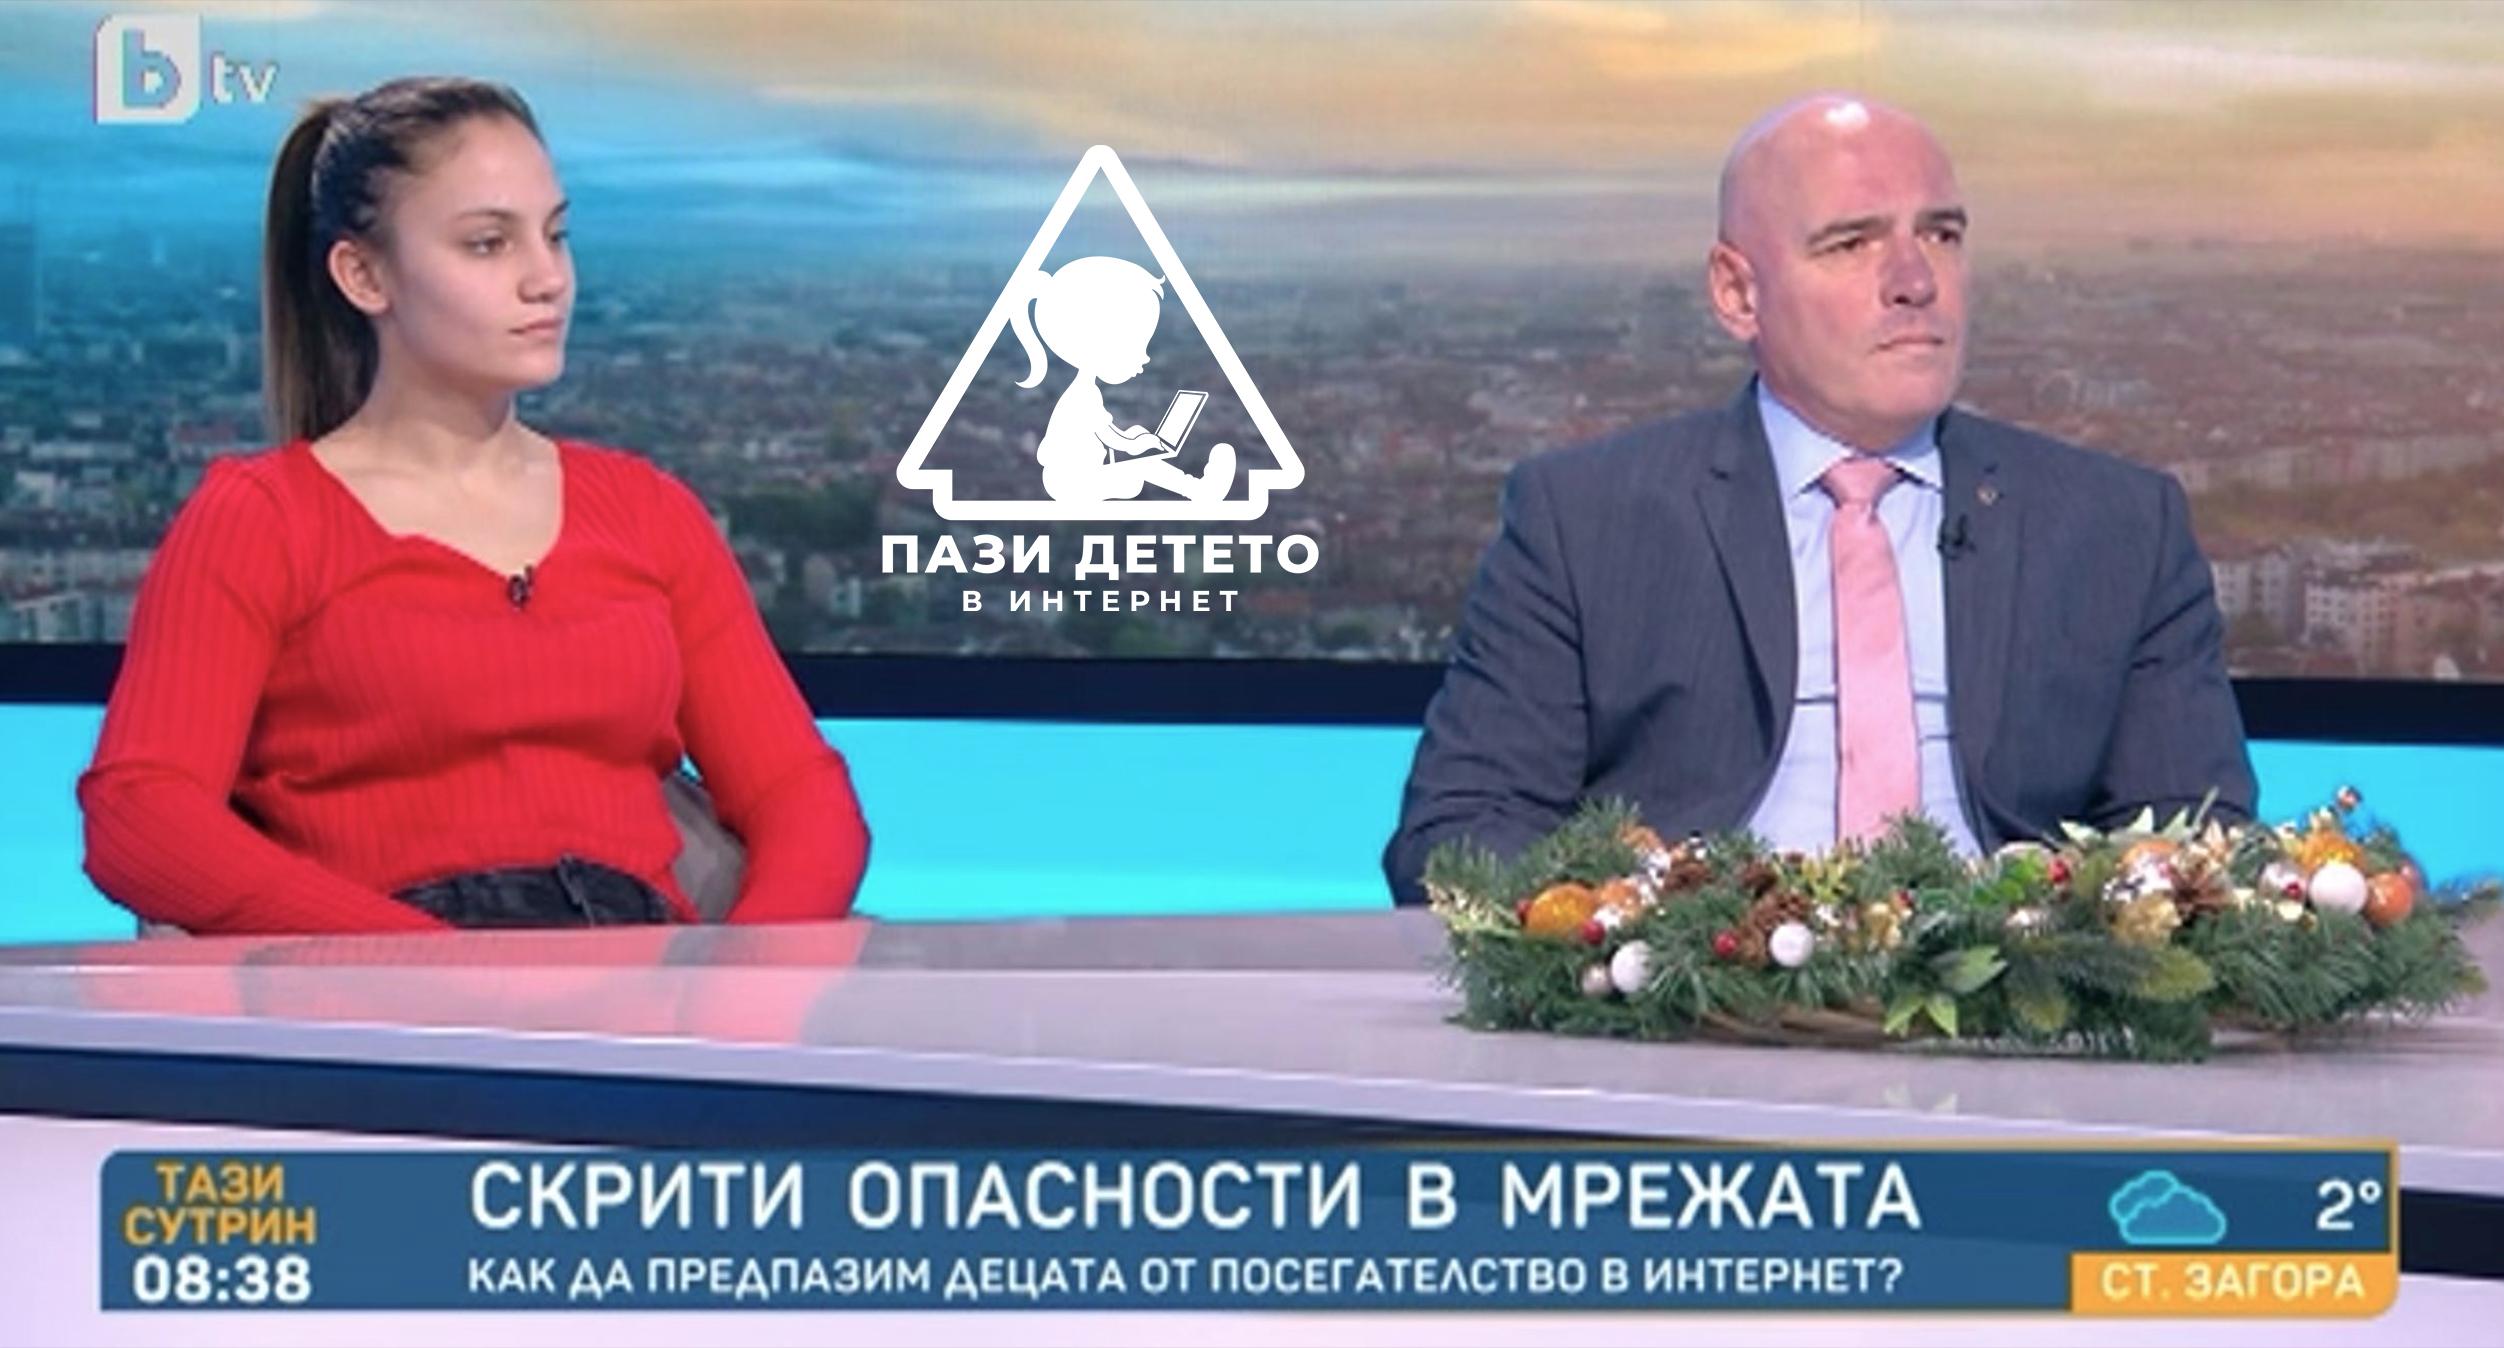 Явор Колев и Ивет Горанова по БТВ за кампанията „Пази детето в интернет” » Социална кампания на ЗК Лев Инс